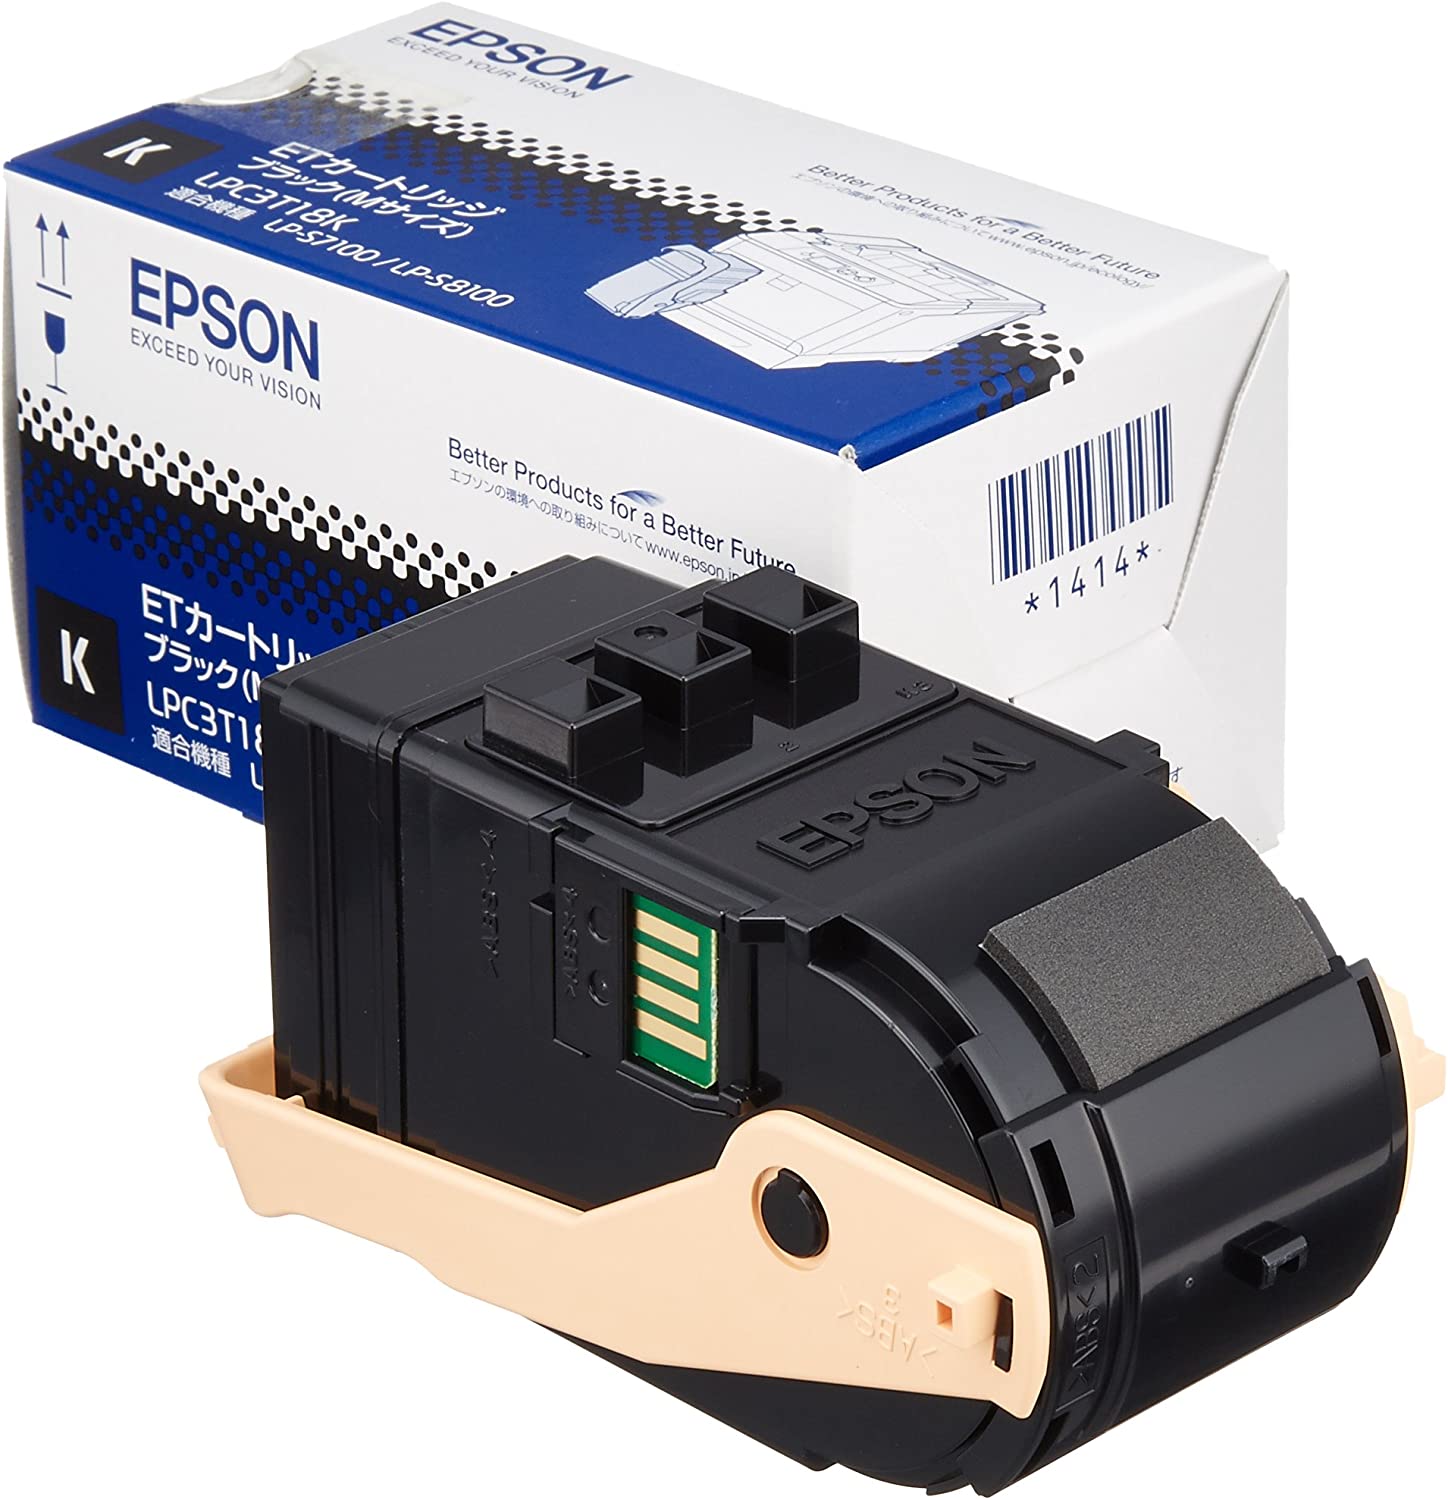 EPSON Offirio LP-S7100 シリーズ用 トナーカートリッジ スマートスタイルカートリッジ ブラック Mサイズ 5500ページ LPC3T18K